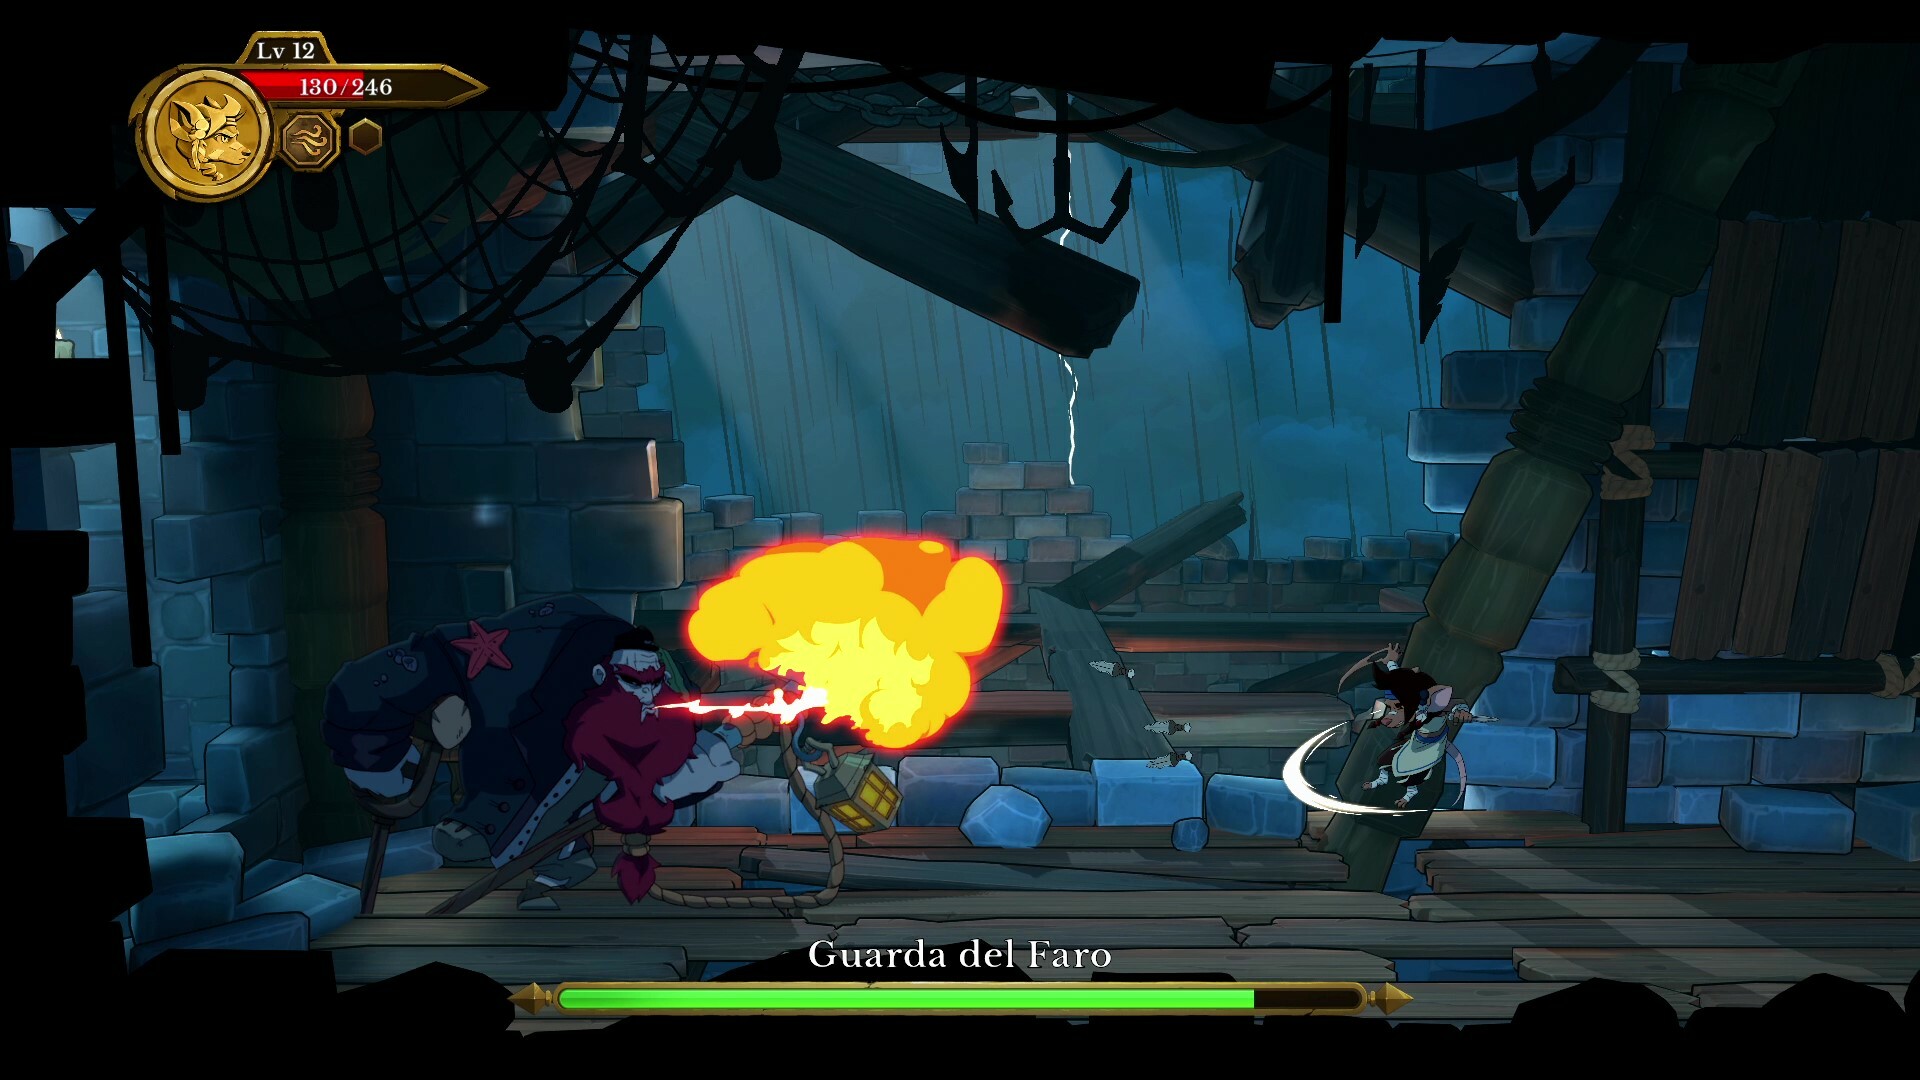 personaje lanzando ataque especial en escenario 2D